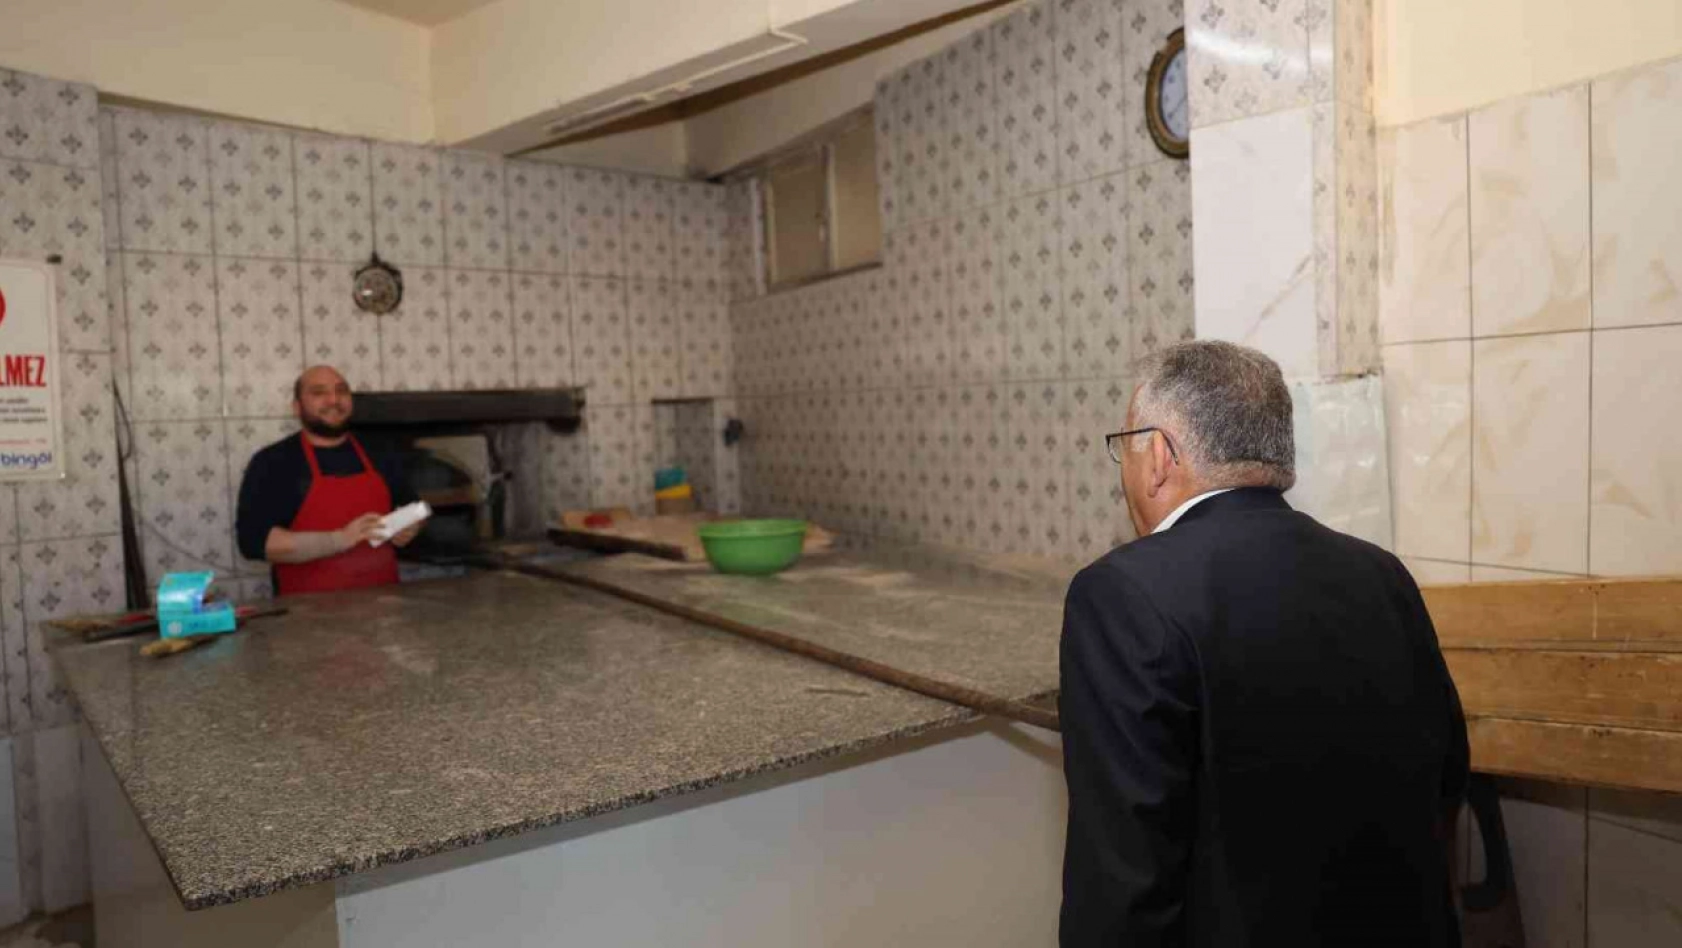 Başkan Büyükkılıç, Bünyan'da Büyükşehir'in çalışmalarını denetledi, esnafla buluştu